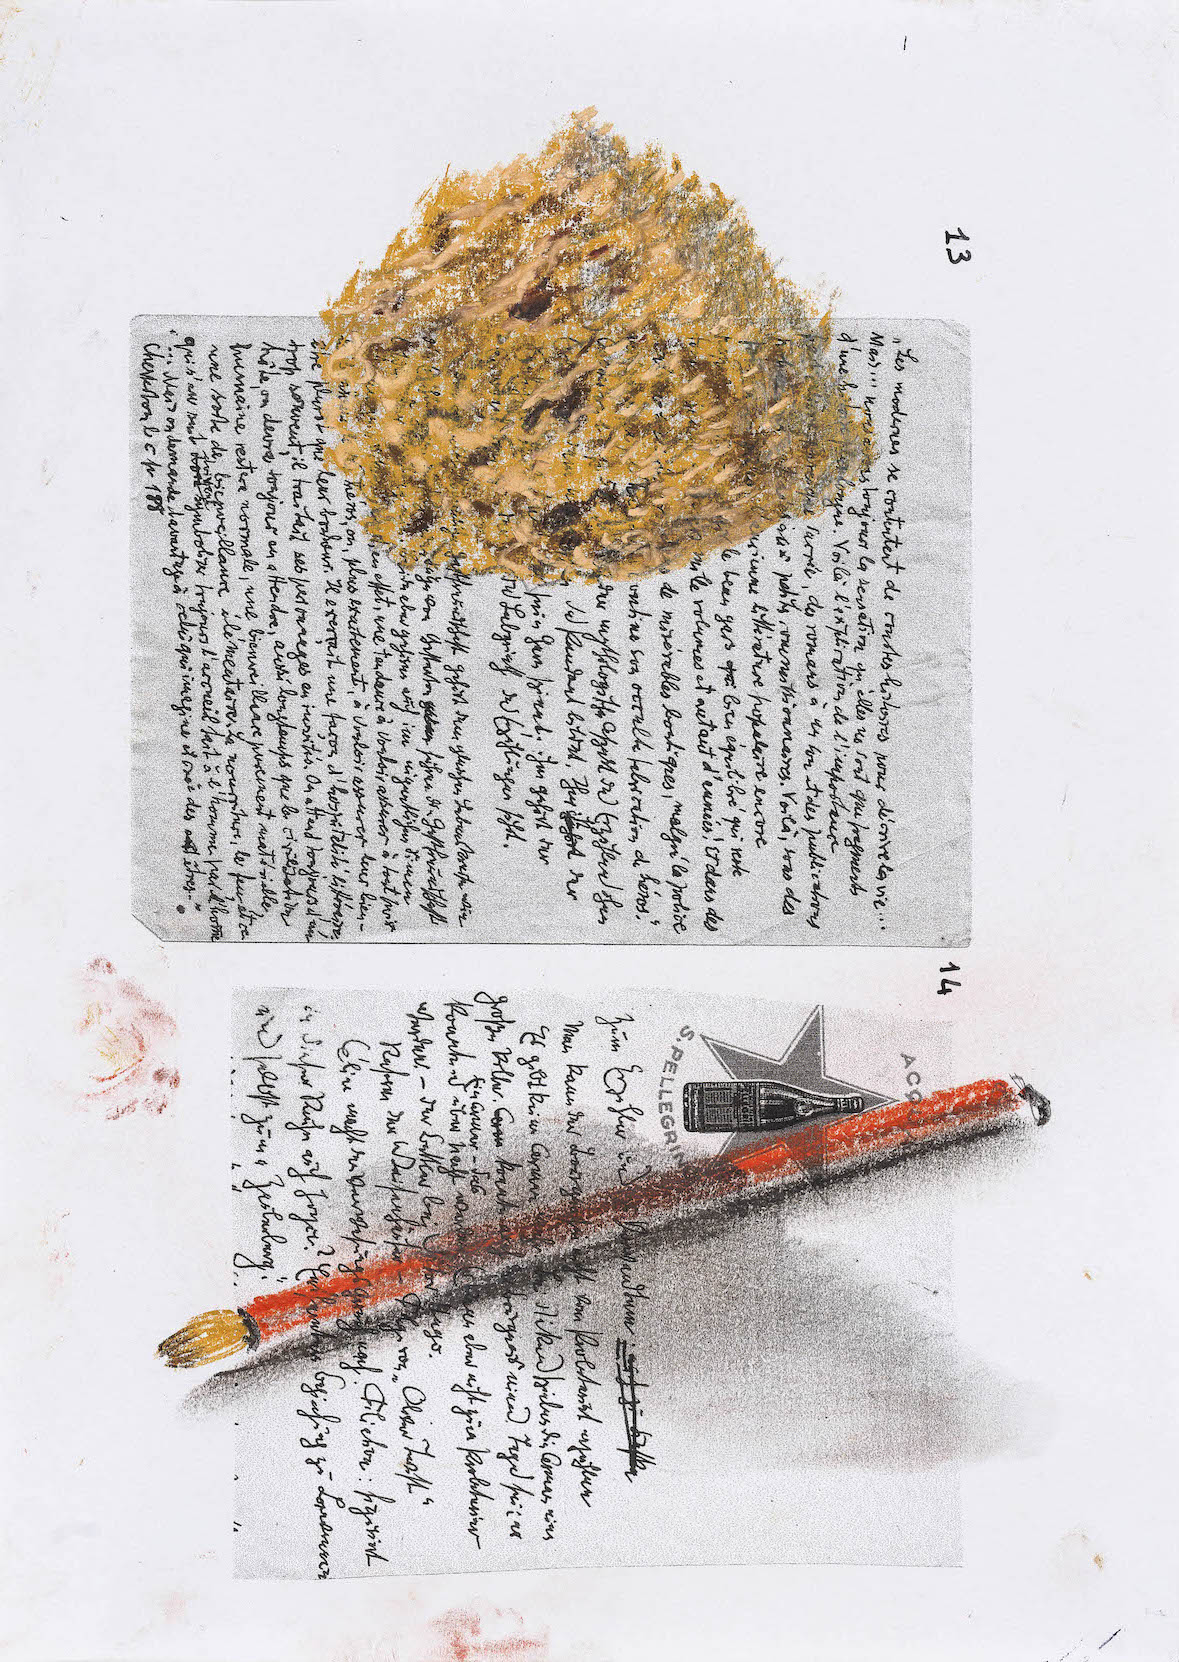 Nello spazio della scrittura, Spugna gettata su pennello su fotocopia di manoscrito di Walter Benjamin, 2018, pastello, 30x21